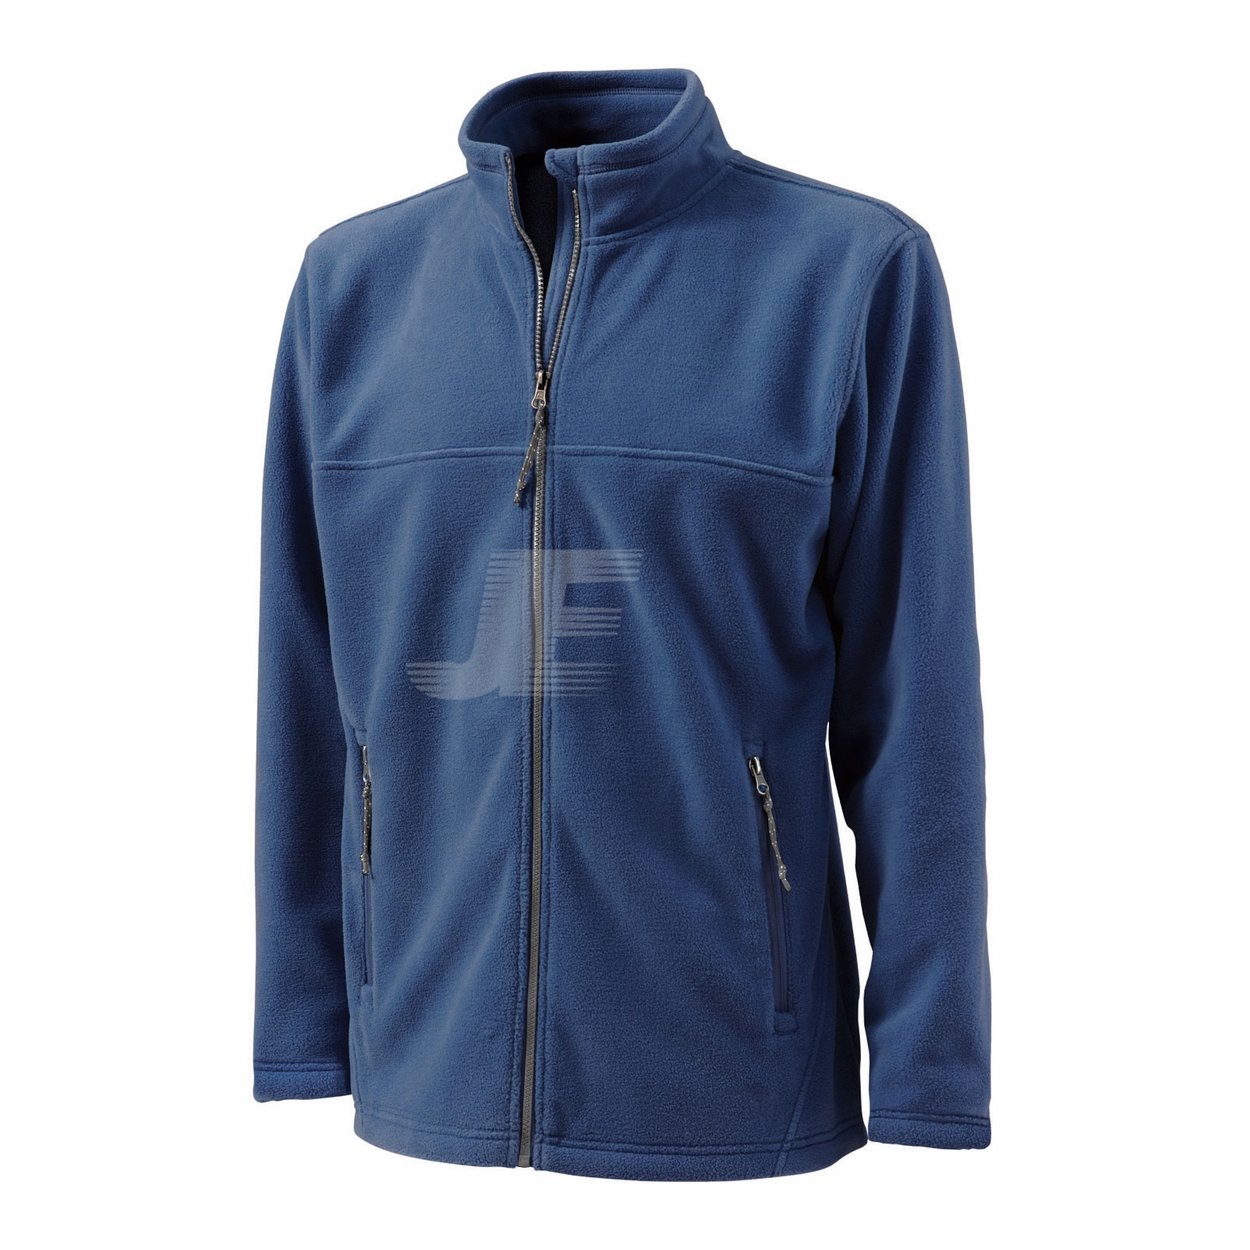 Mens Full Zip Lightweight Navy Fleece Jacket with Zip Pockets